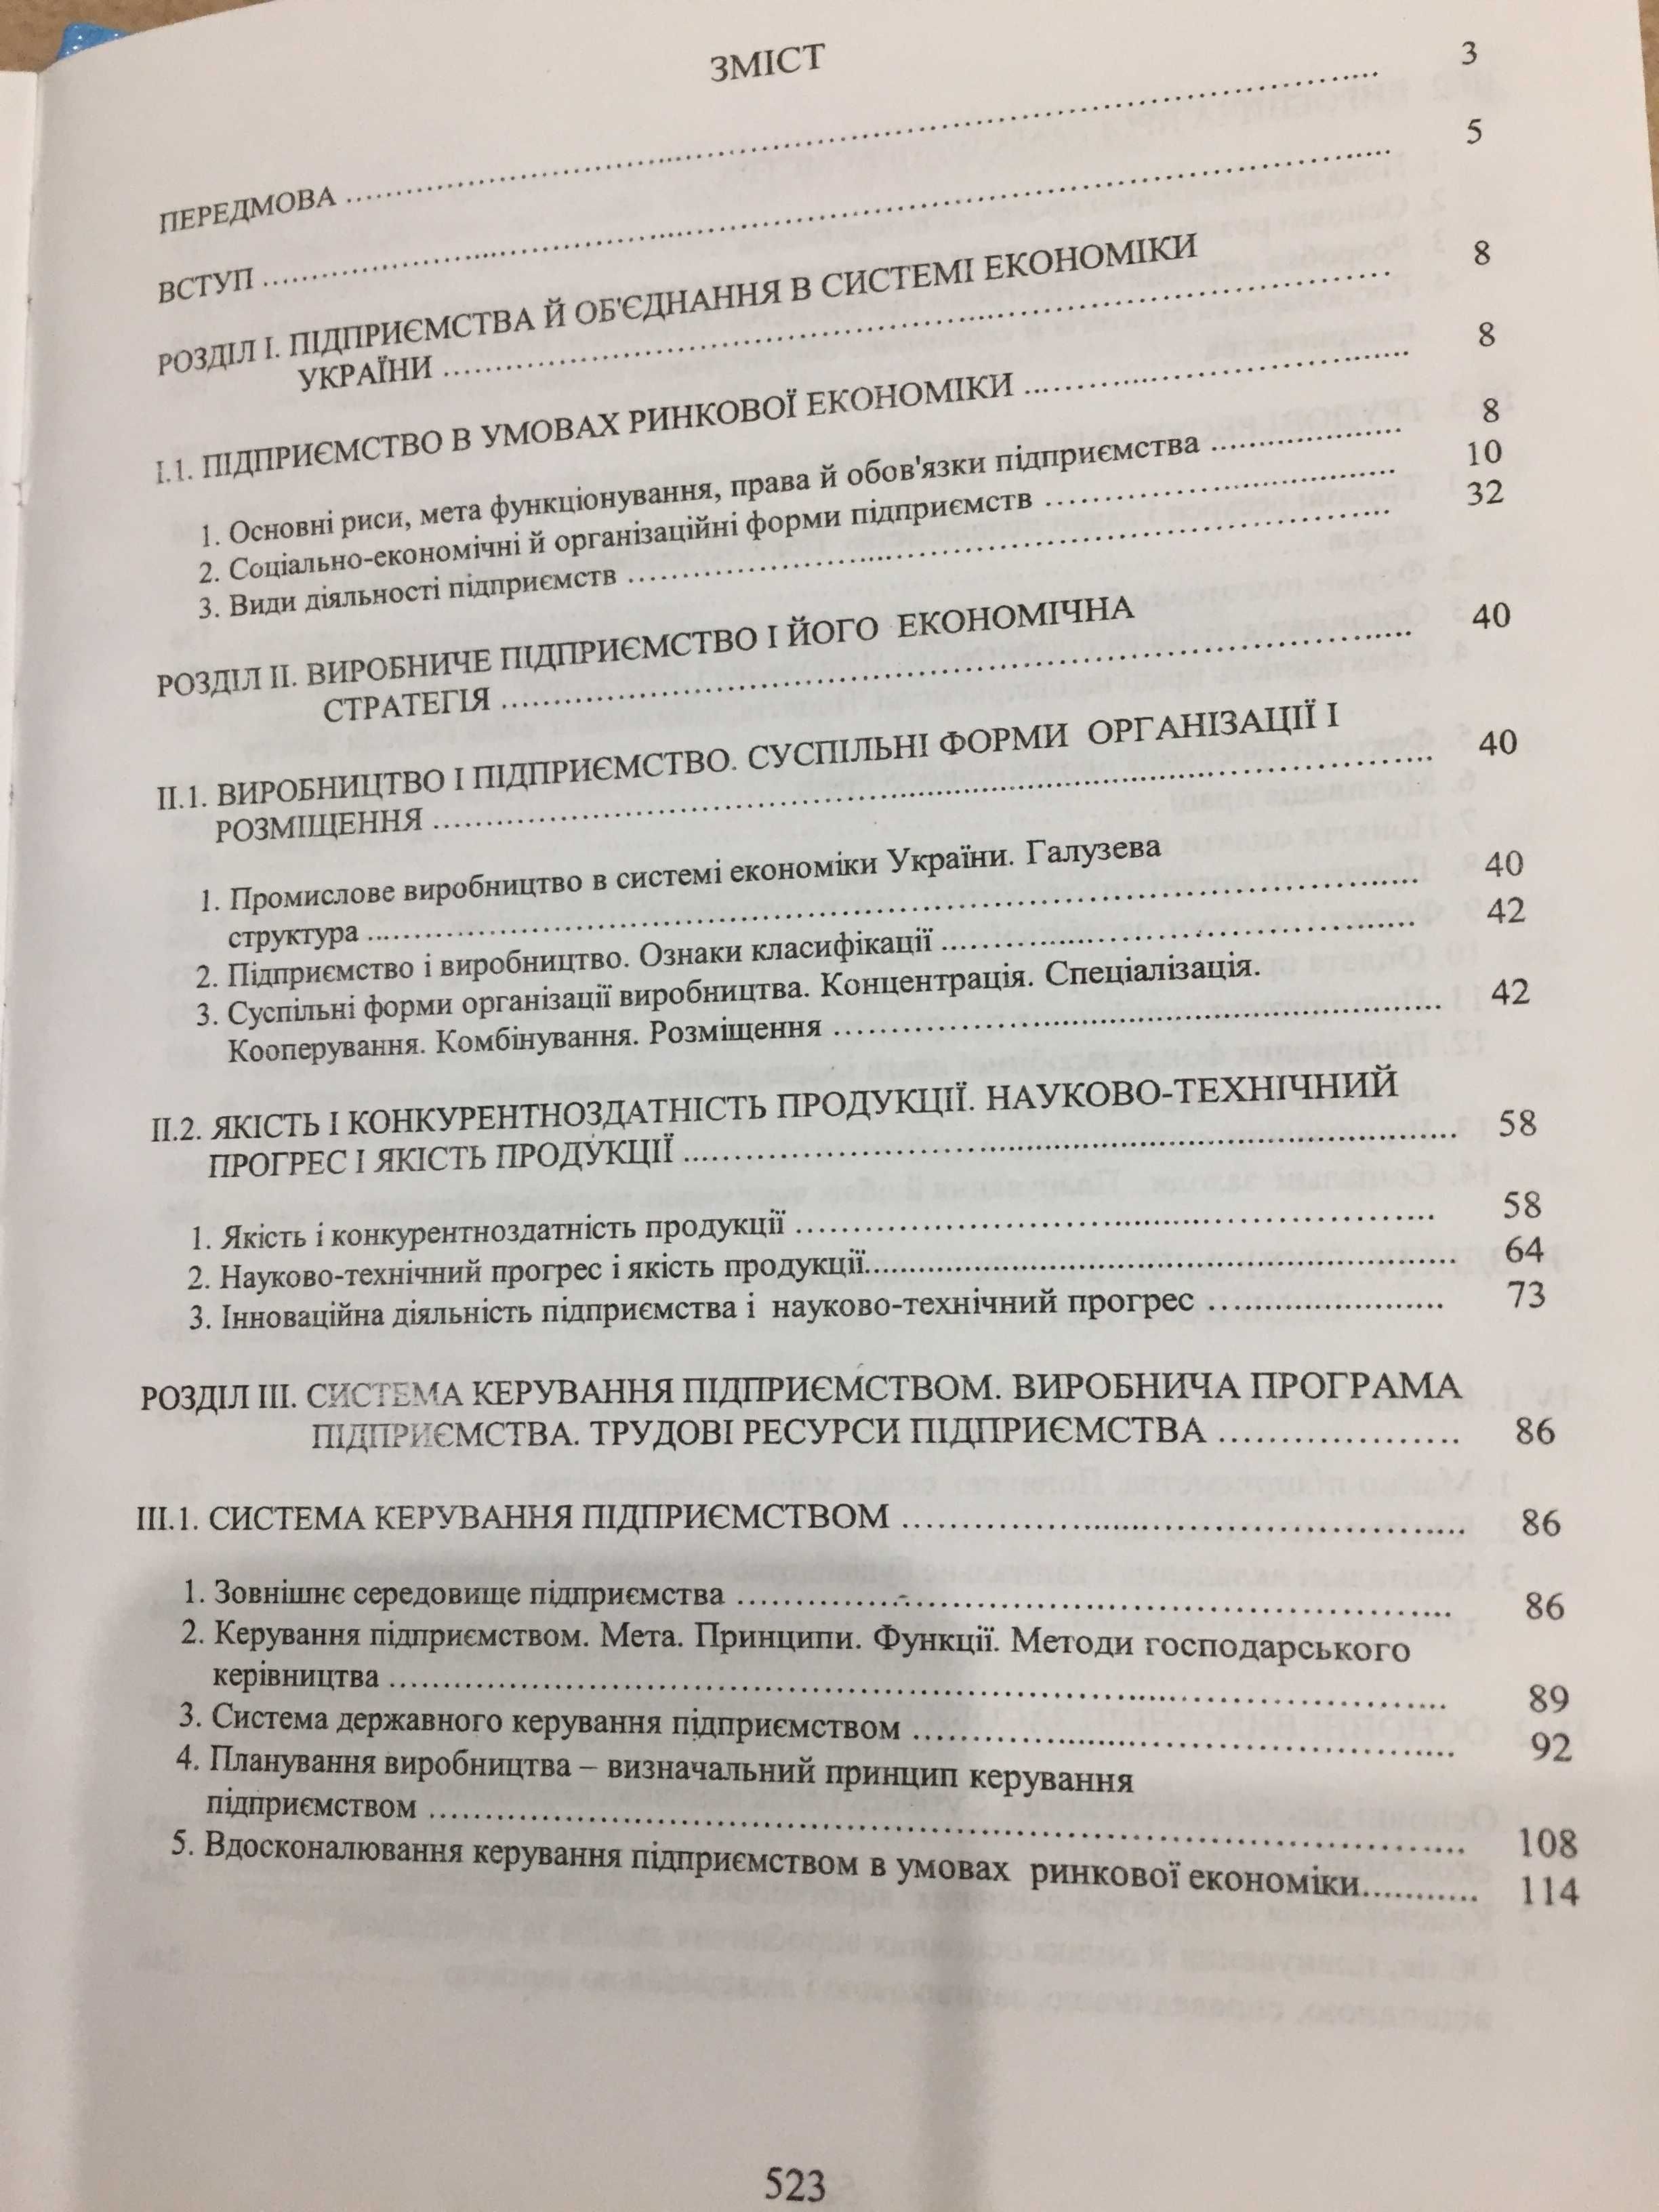 Бойко В.В. Економіка підприємств України. Навчальний посібник. 528с.